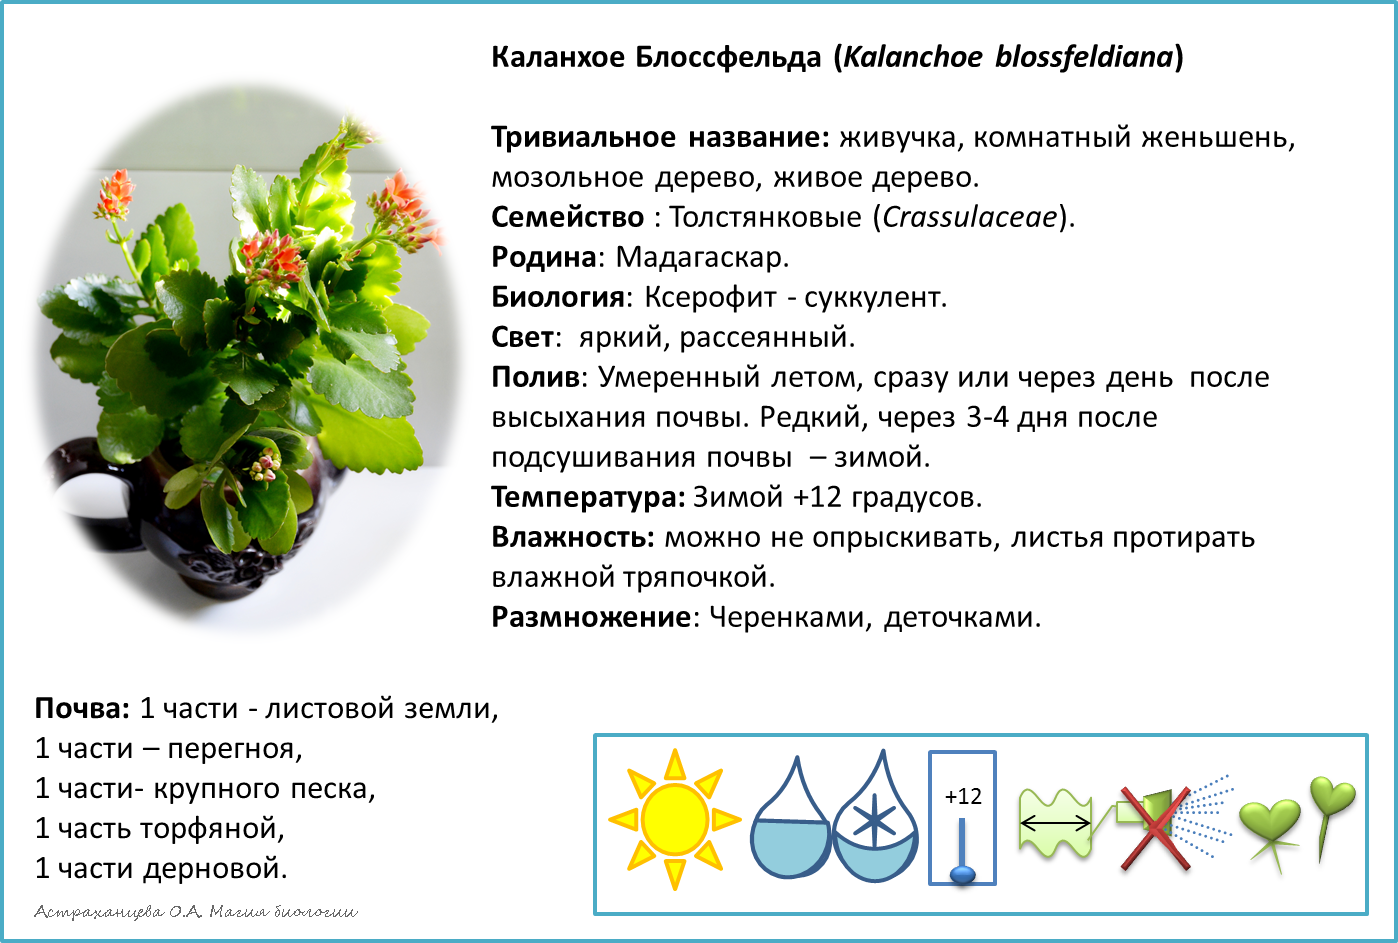 Опишите особенности растений каланхоэ и аспарагуса